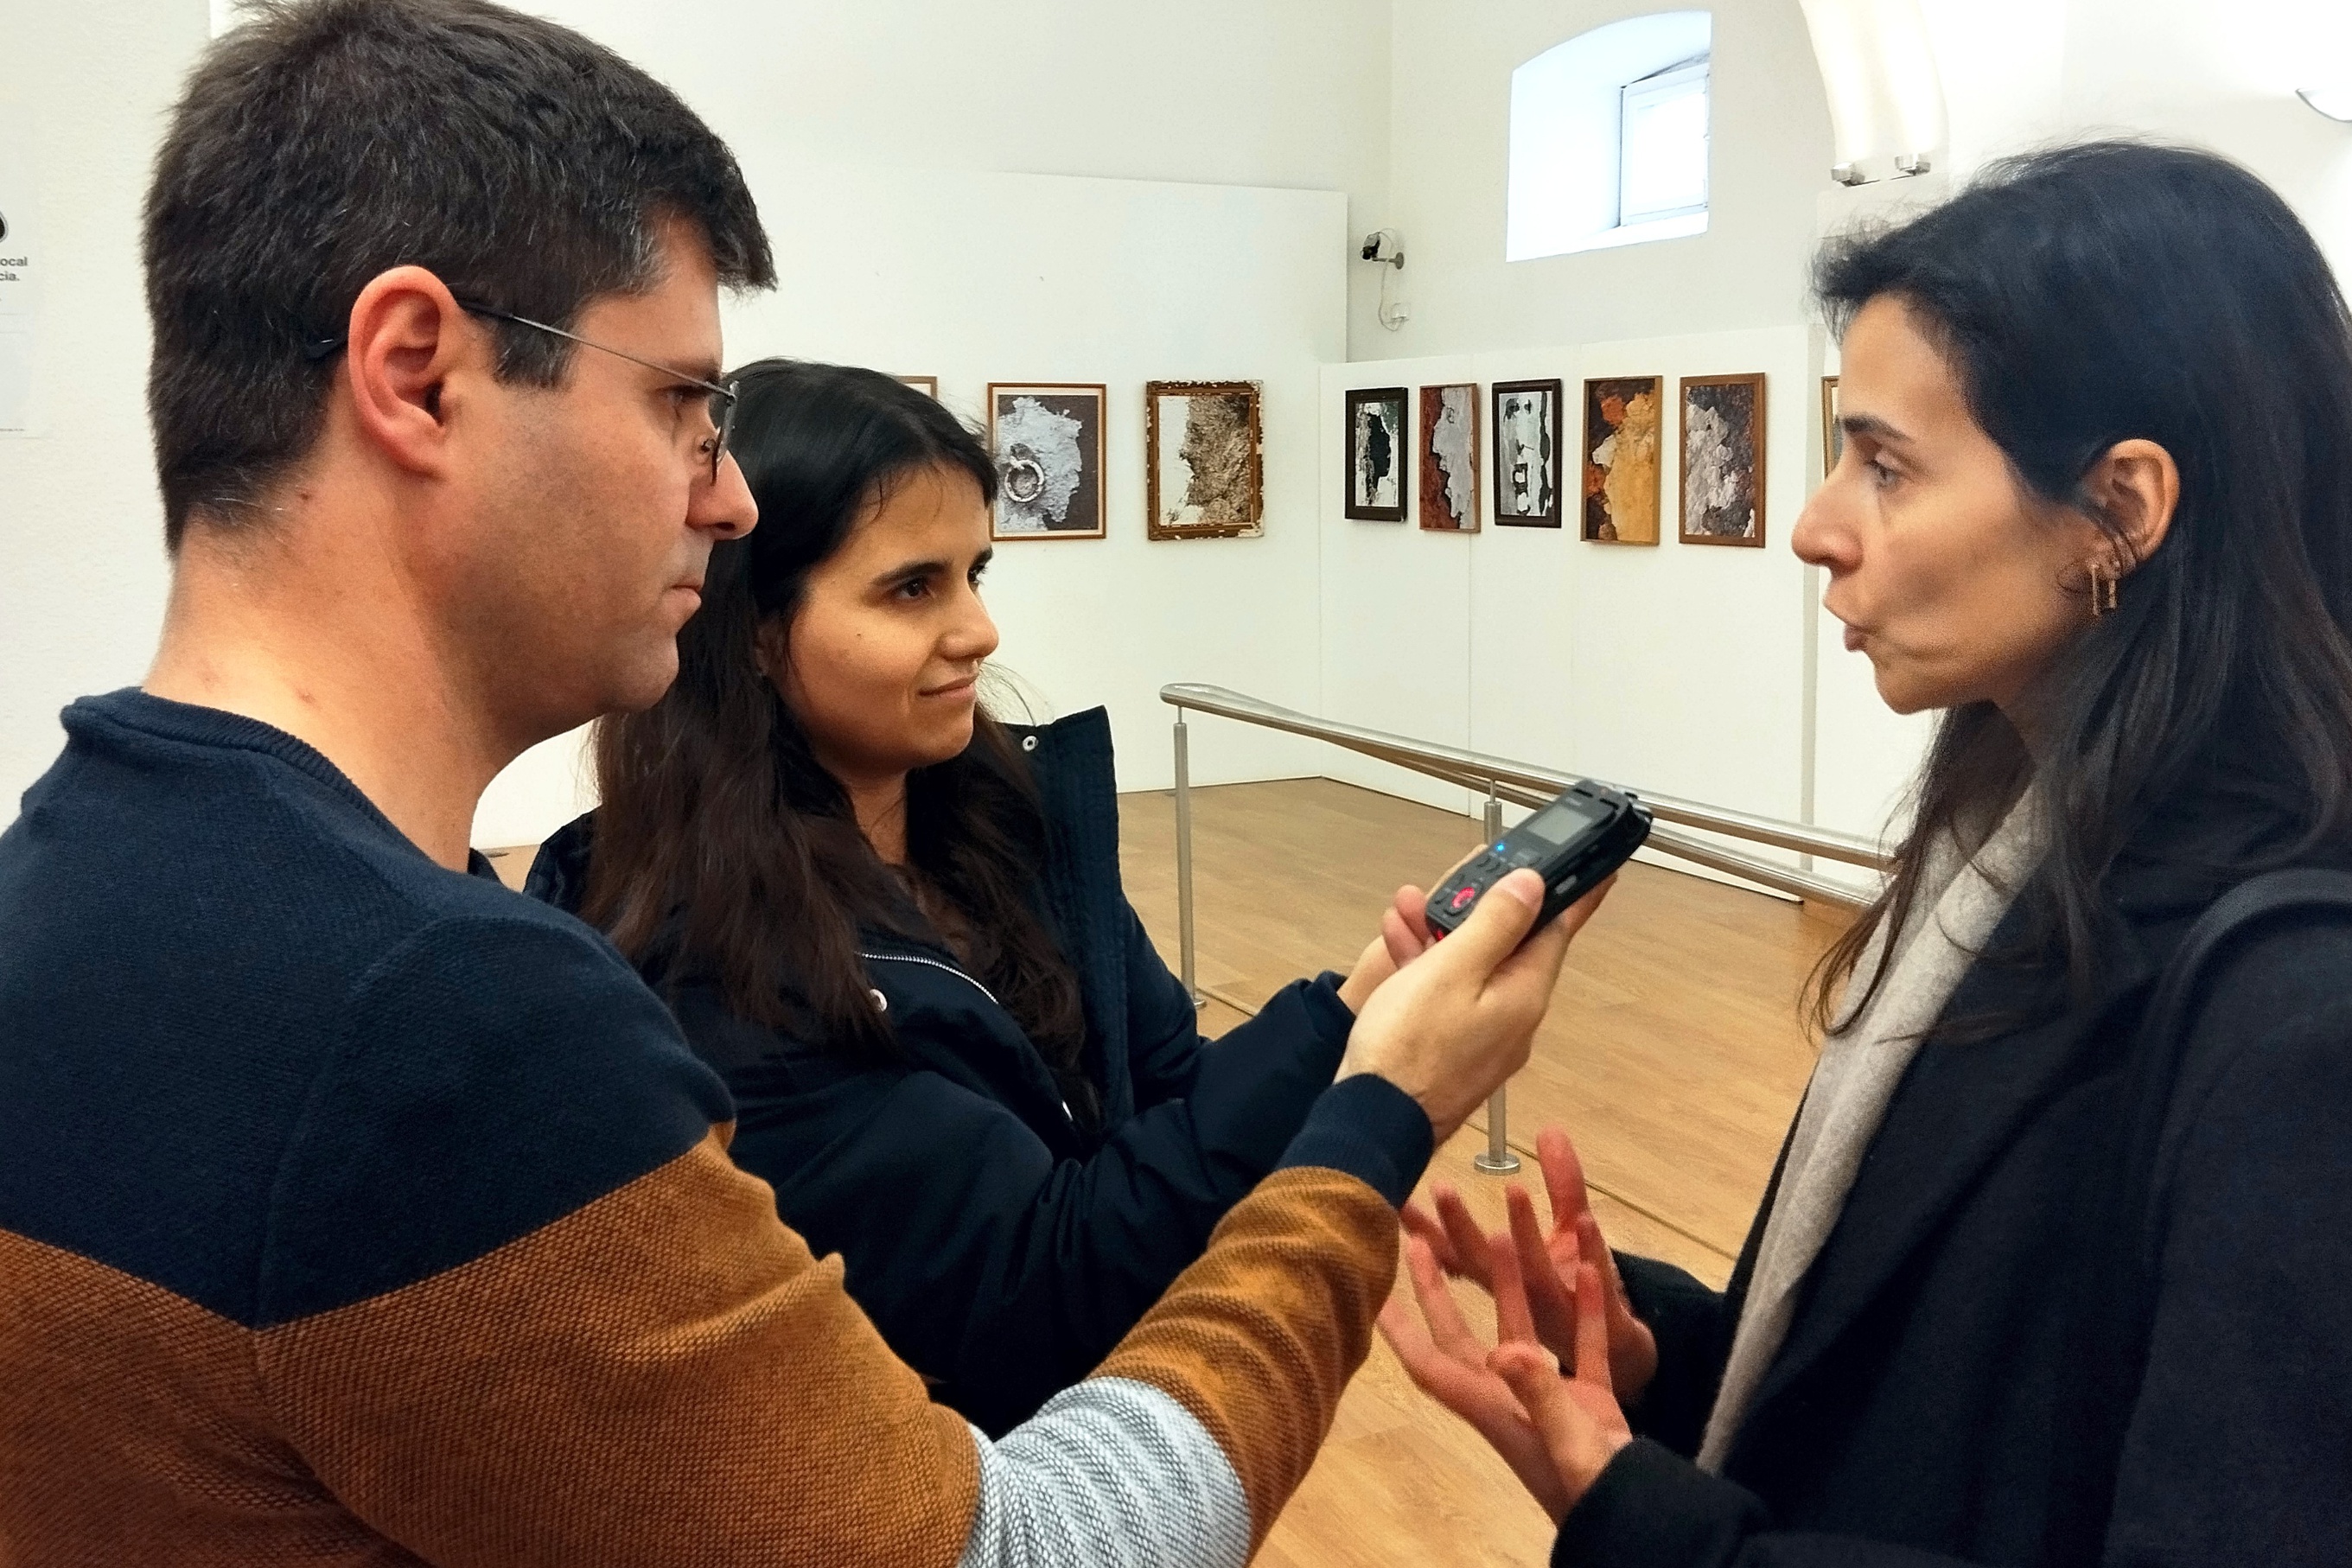 Entrevista à vogal do conselho diretivo do IPDJ, Sílvia Vermelho, realizada pelo Jornal Online «O Digital» e pela Rádio Diana FM, no espaço da exposição.